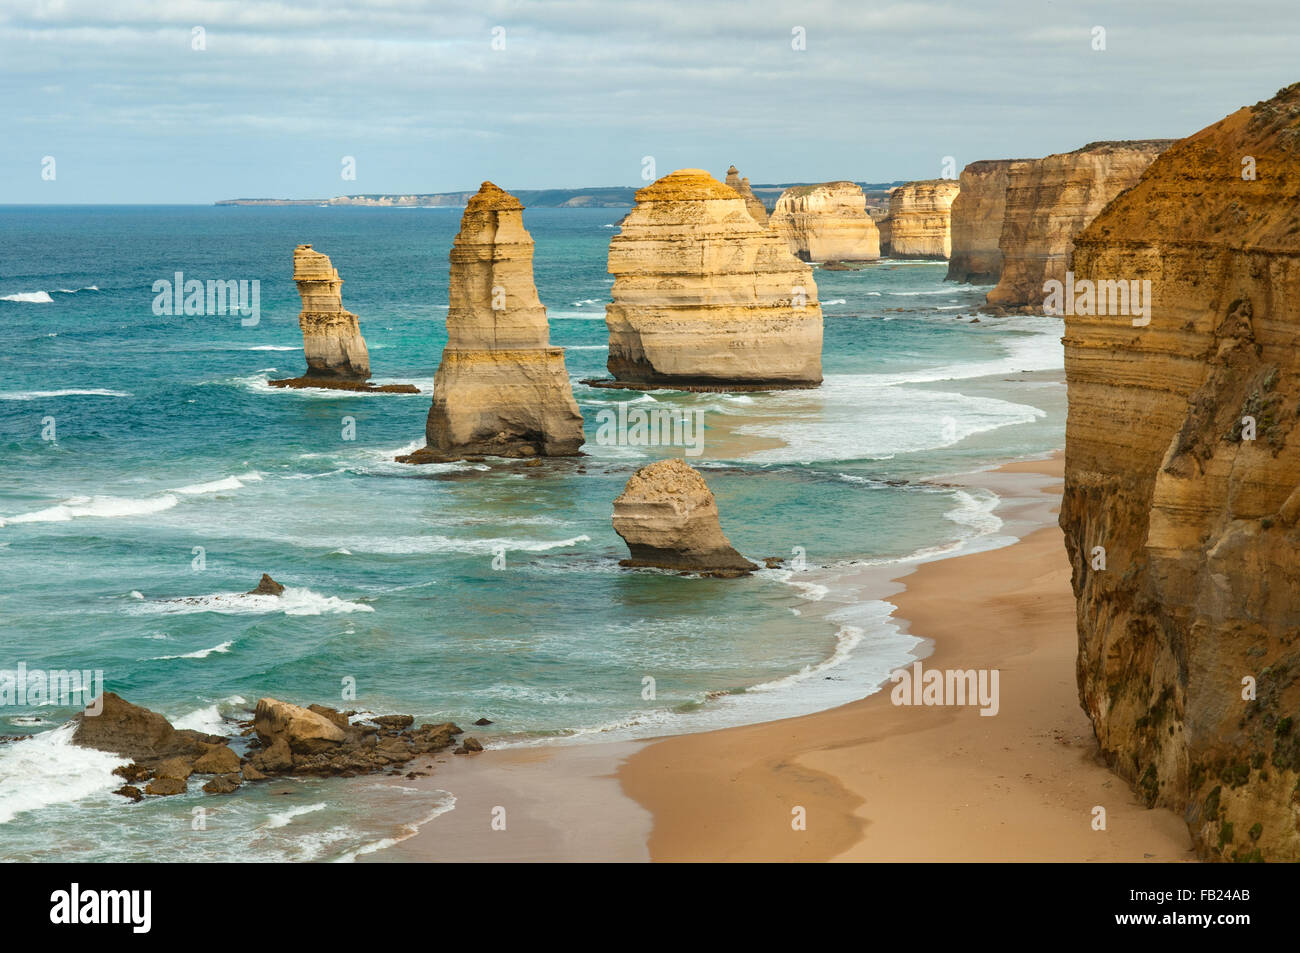 Les douze apôtres, Great Ocean Road, Victoria, Australie Banque D'Images